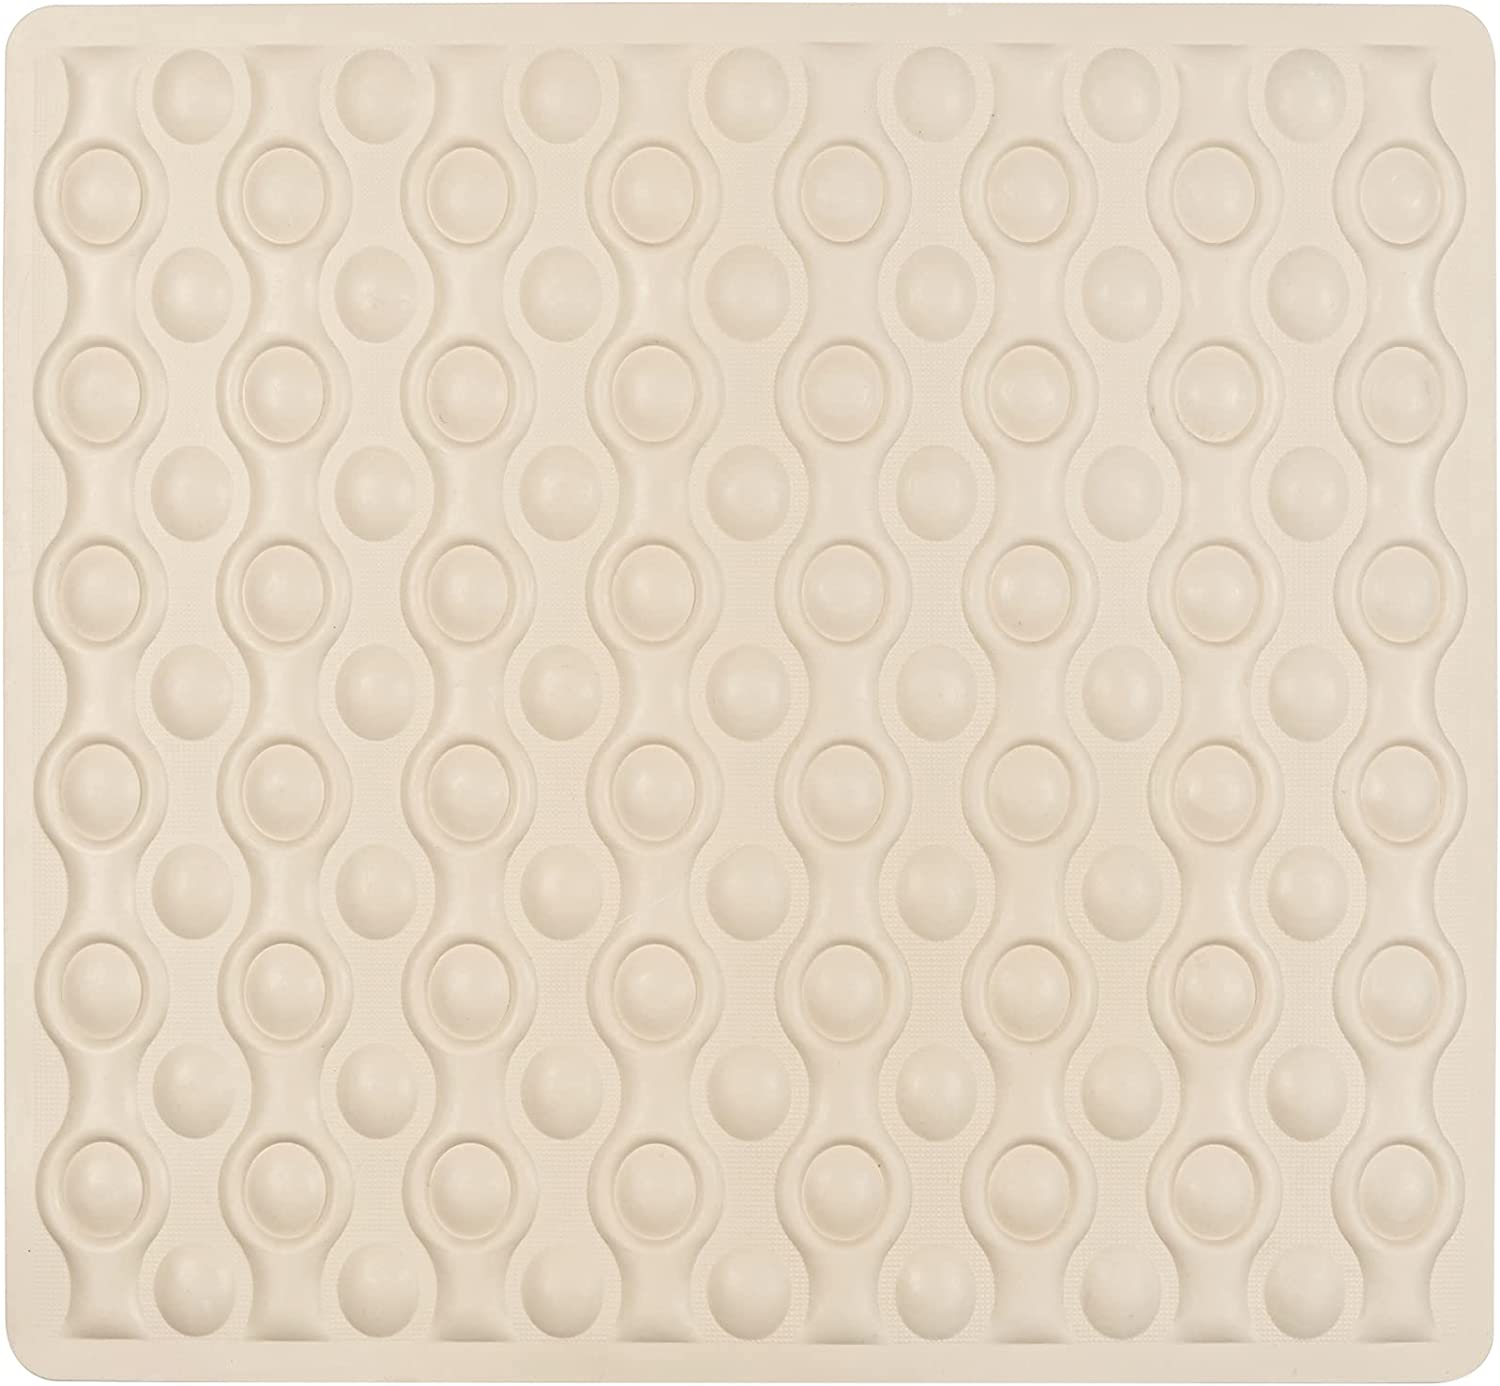 Duscheinlage Rocha Beige - Antirutsch-Duschmatte mit extra vielen Saugnäpfen, Naturkautschuk, 52 x 54 cm, Beige